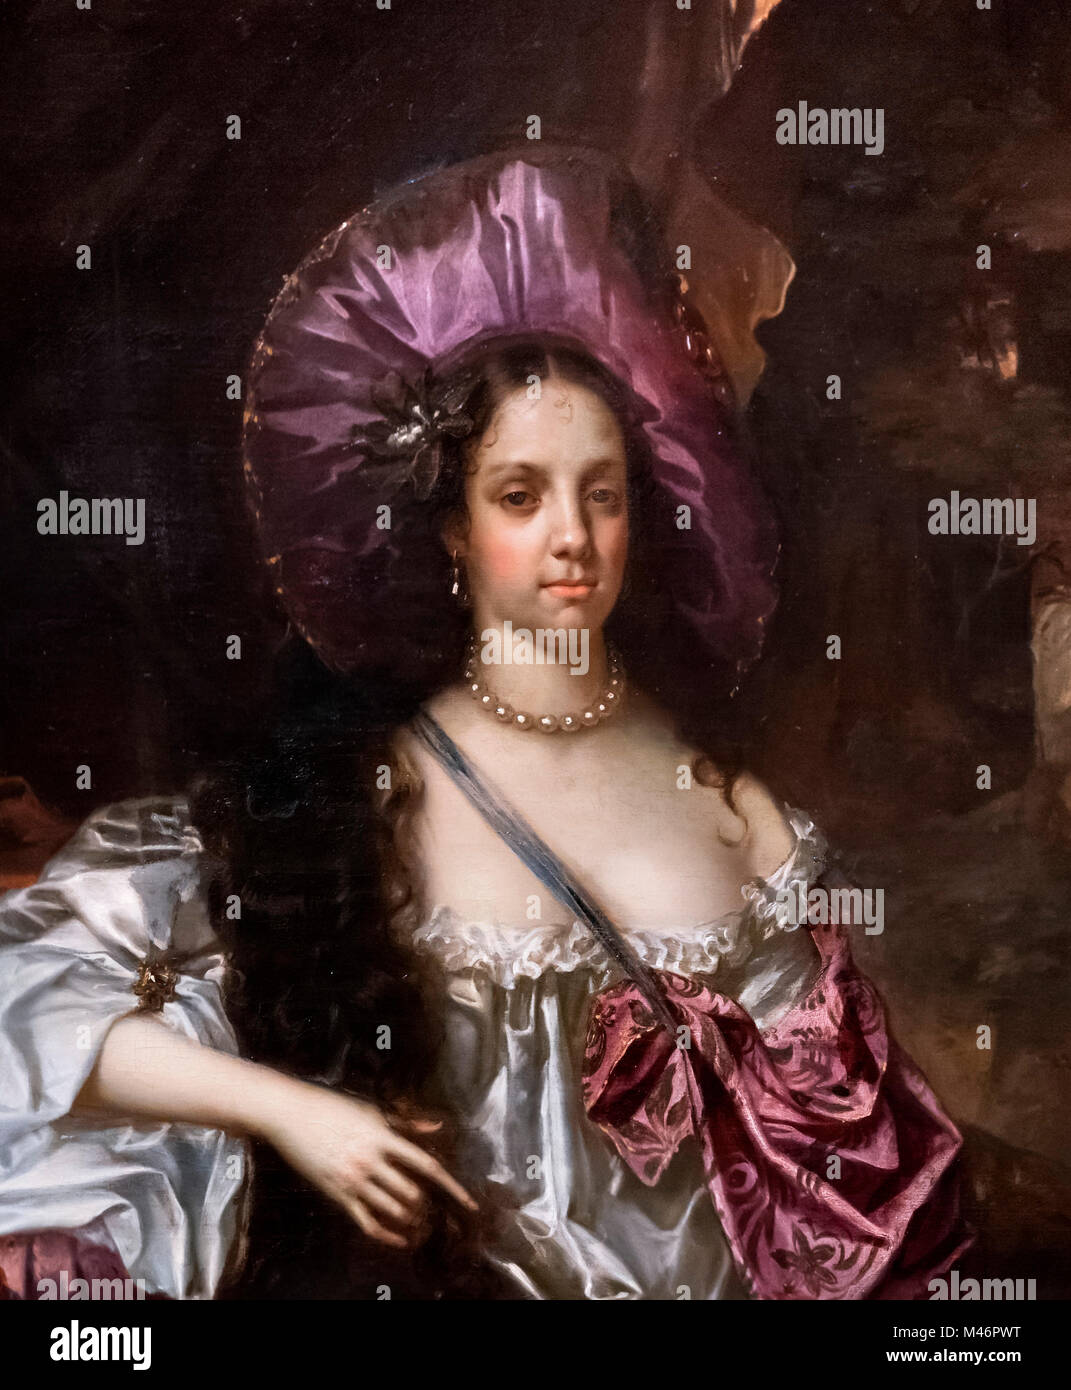 Catherine de Bragance (1638-1705), Reine Consort d'épouse du roi Charles II. Portrait par Hacob Huysmans, huile sur toile, 1662-4. Détail d'une grande peinture, M46PWW. Banque D'Images